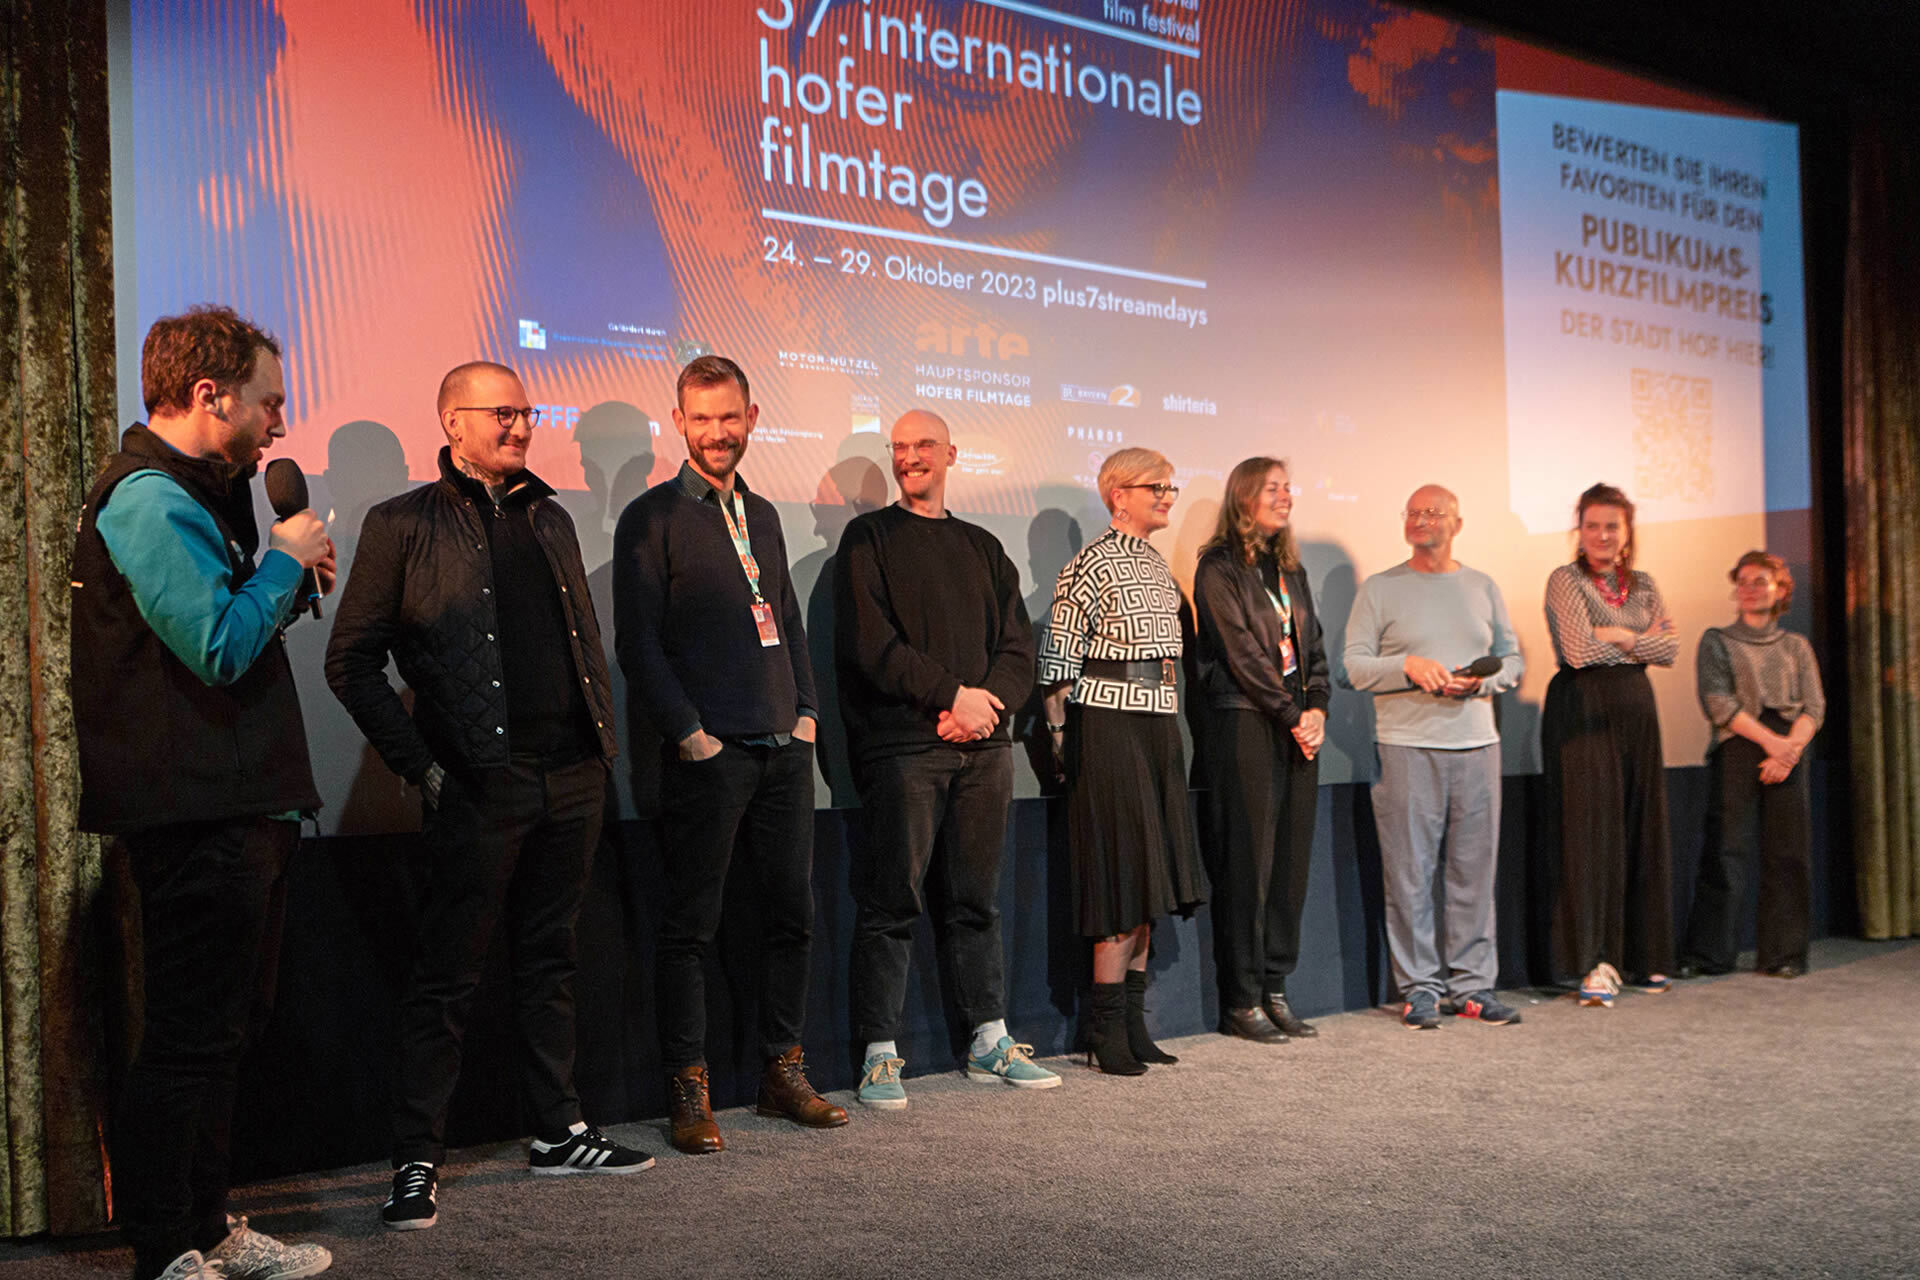 Das Team von STÖRUNG bei den 57. Internationalen Hofer Filmtagen